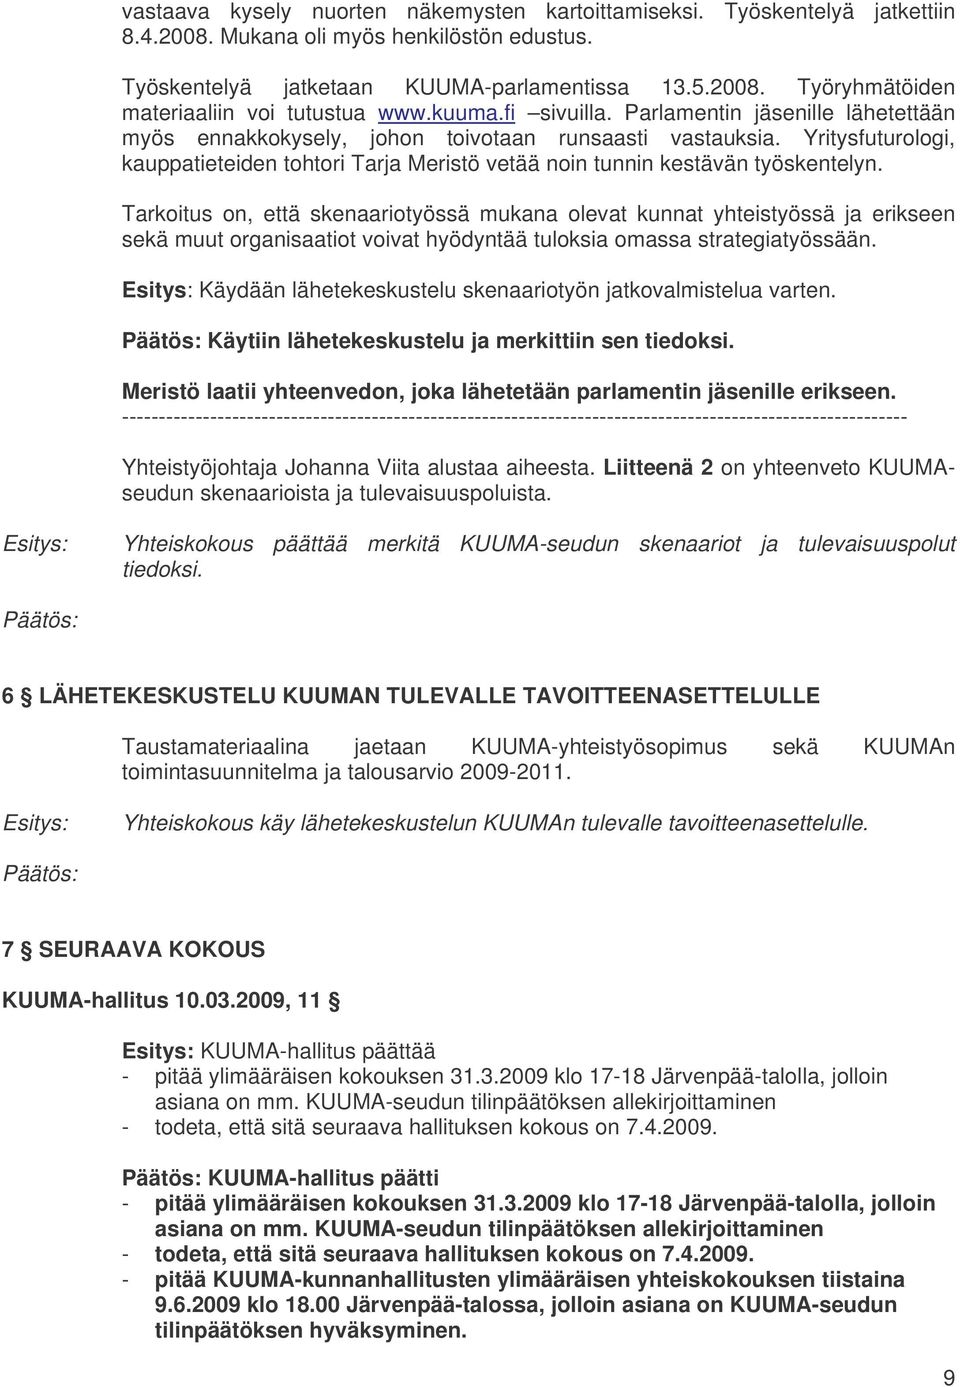 Yritysfuturologi, kauppatieteiden tohtori Tarja Meristö vetää noin tunnin kestävän työskentelyn.